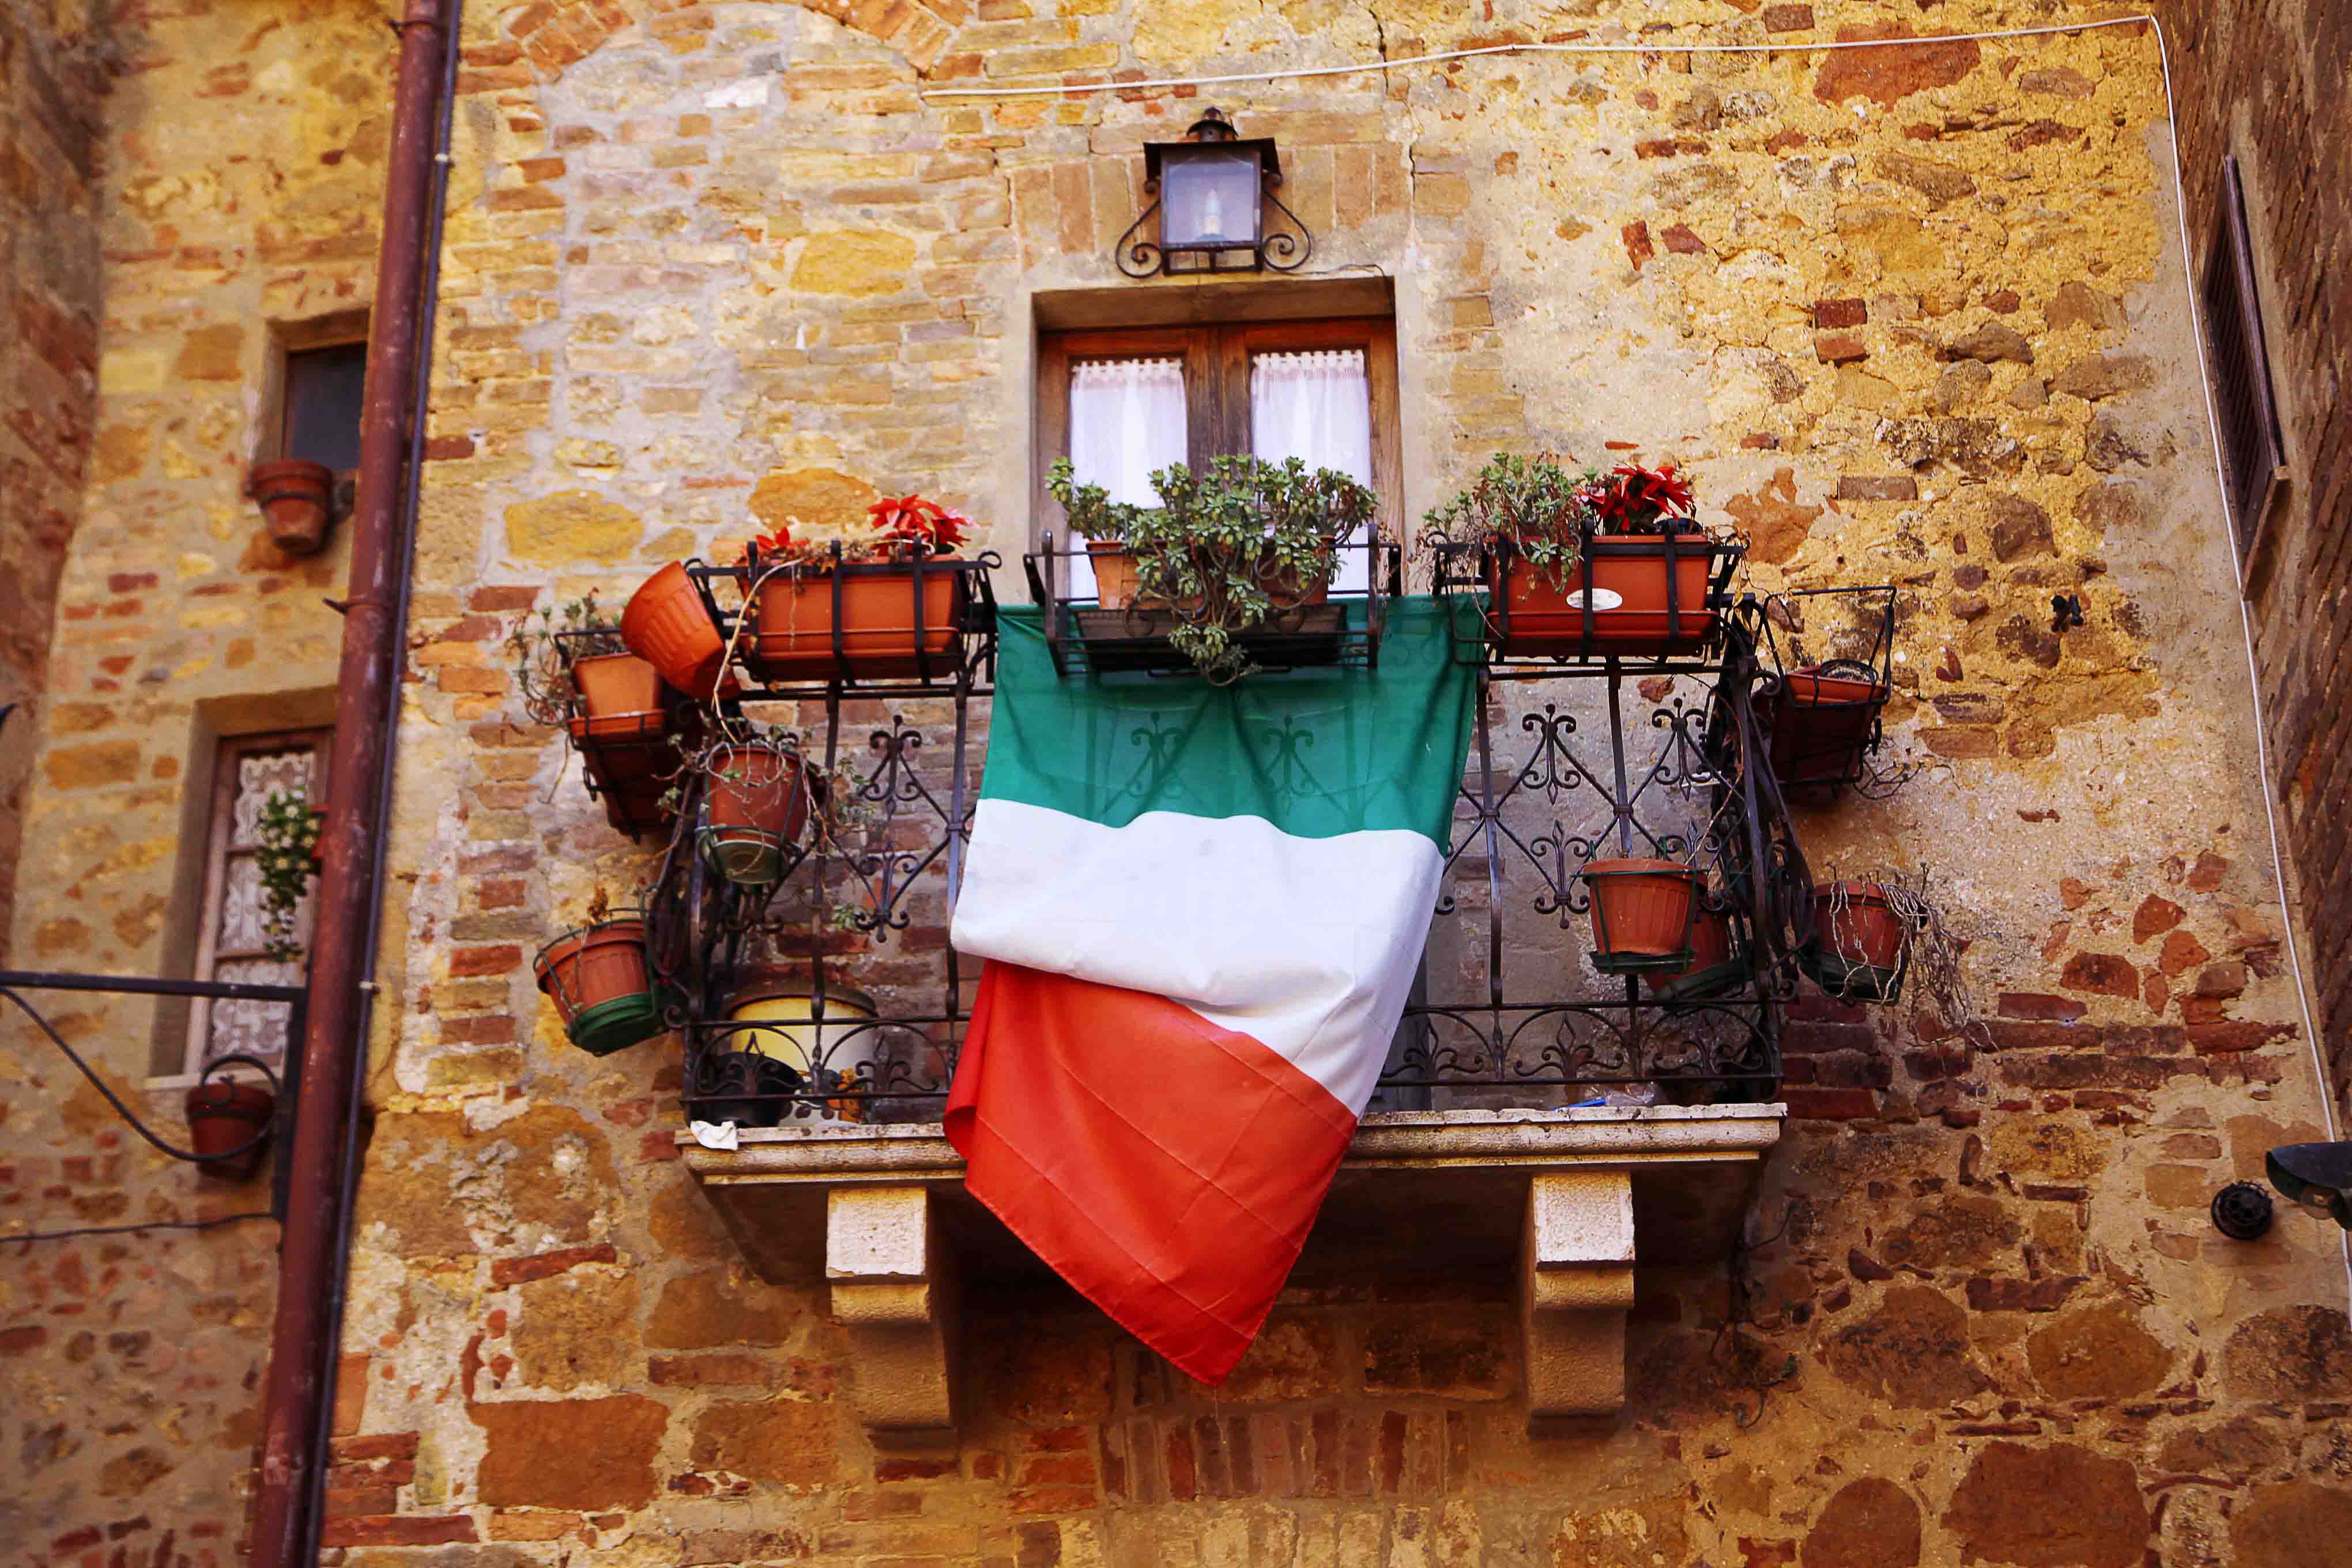 Perché la bandiera italiana è bianca, rossa e verde?